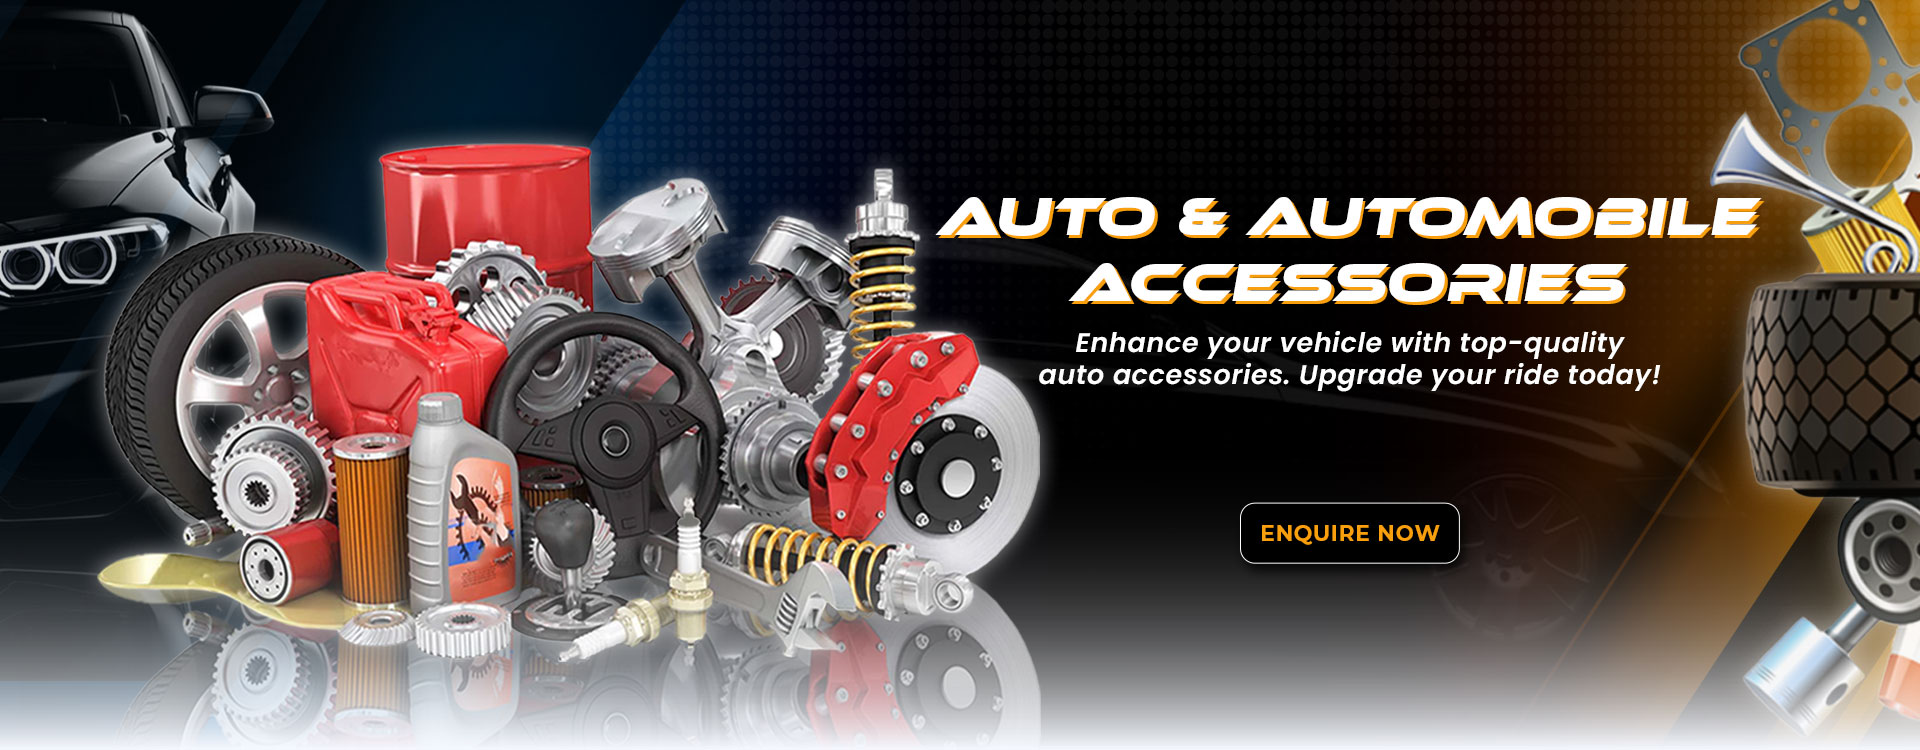 Auto-&-Automobile-Accessories